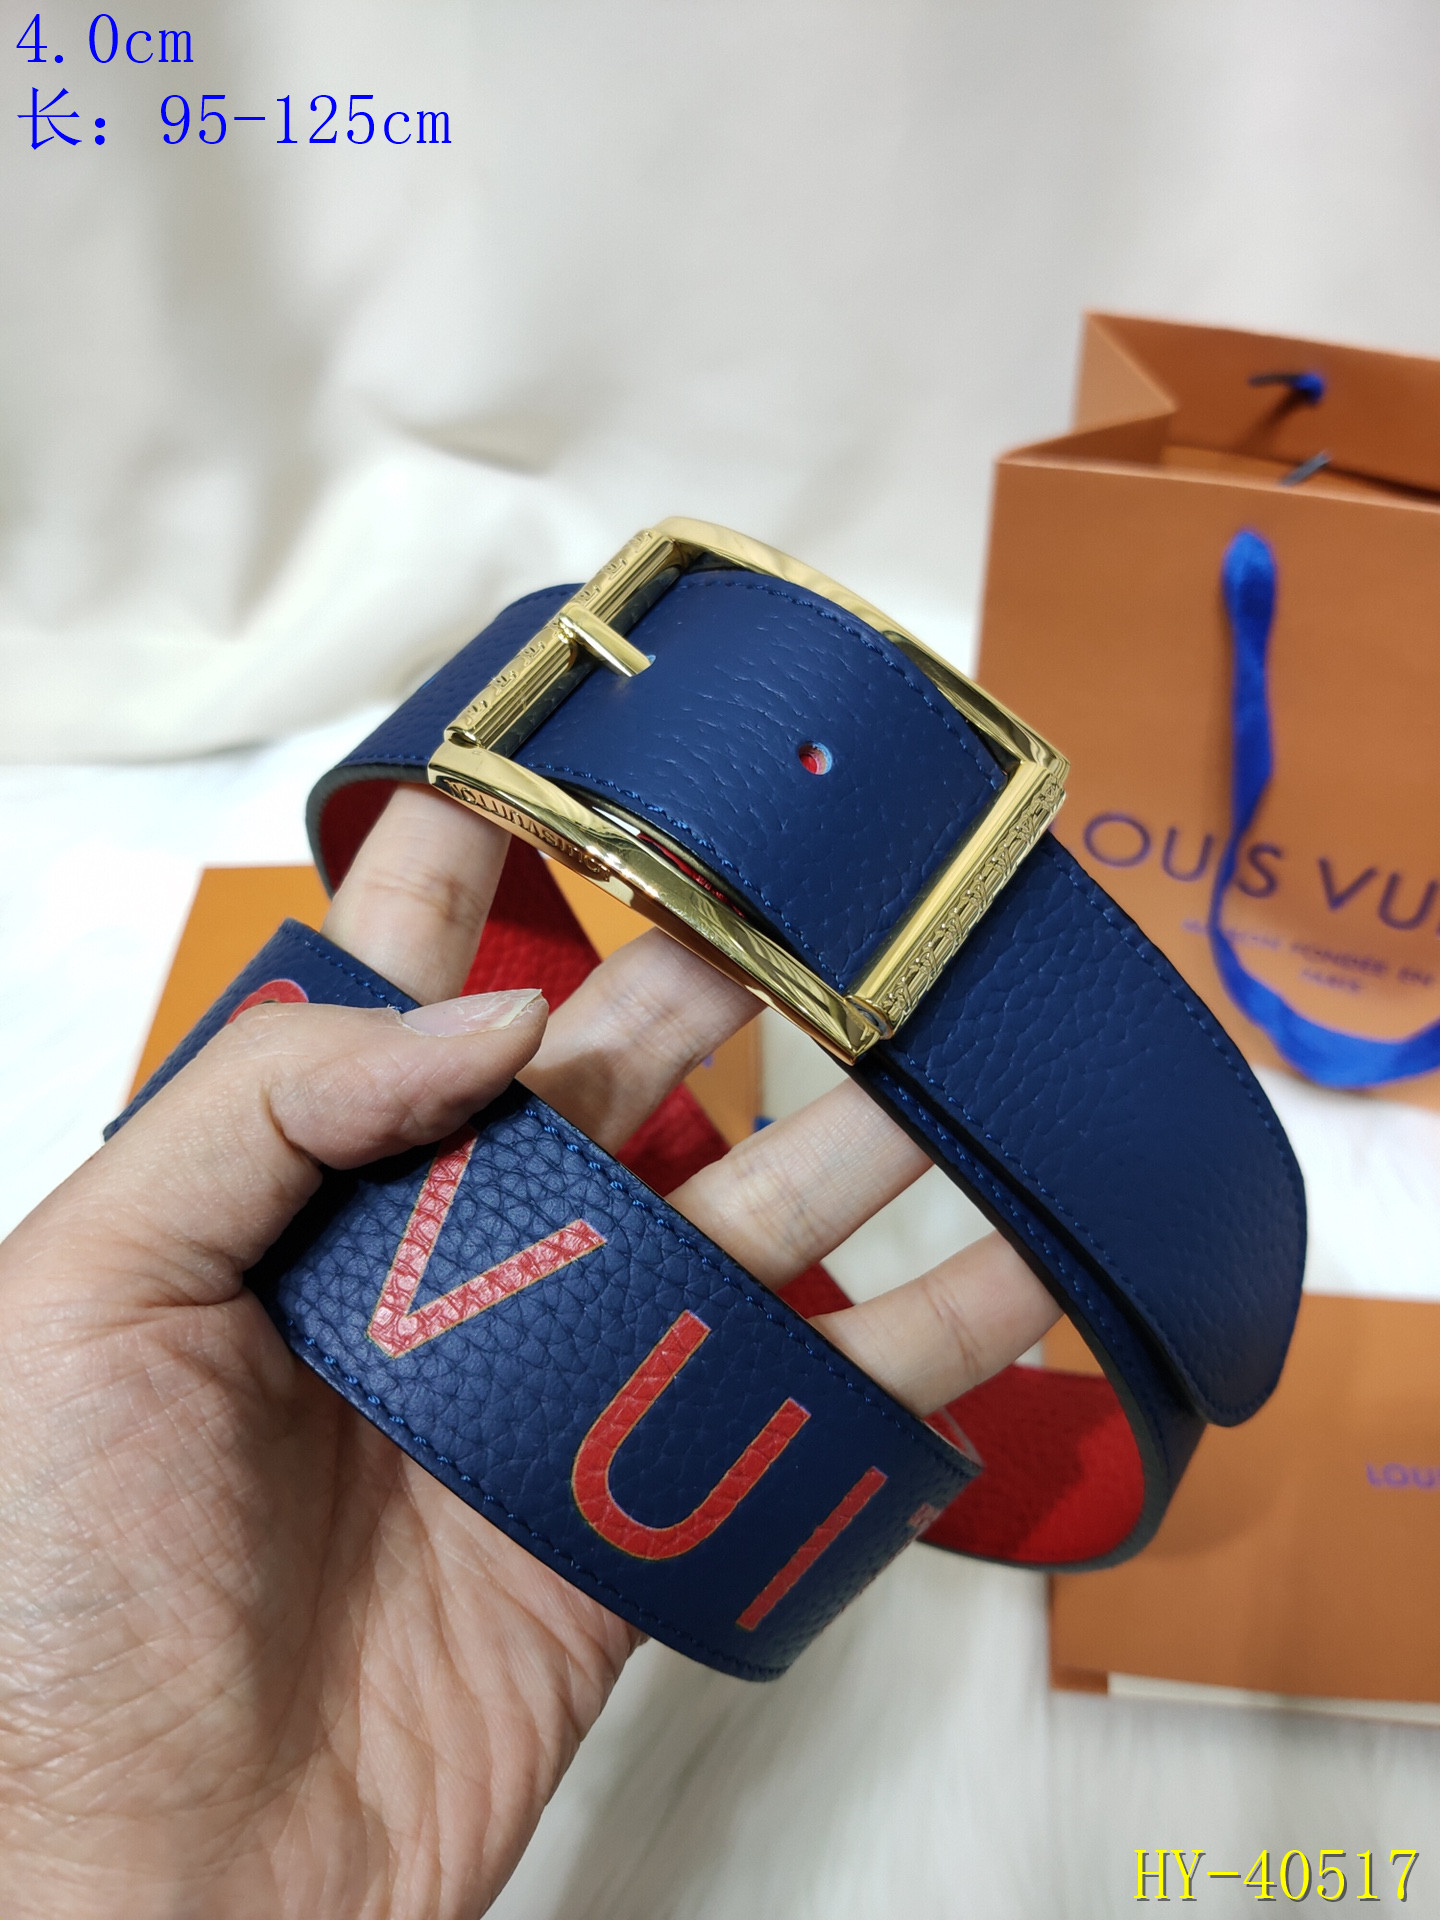 Louis Vuitton belt with Gold buckle hardware 95 cm Louis Vuitton